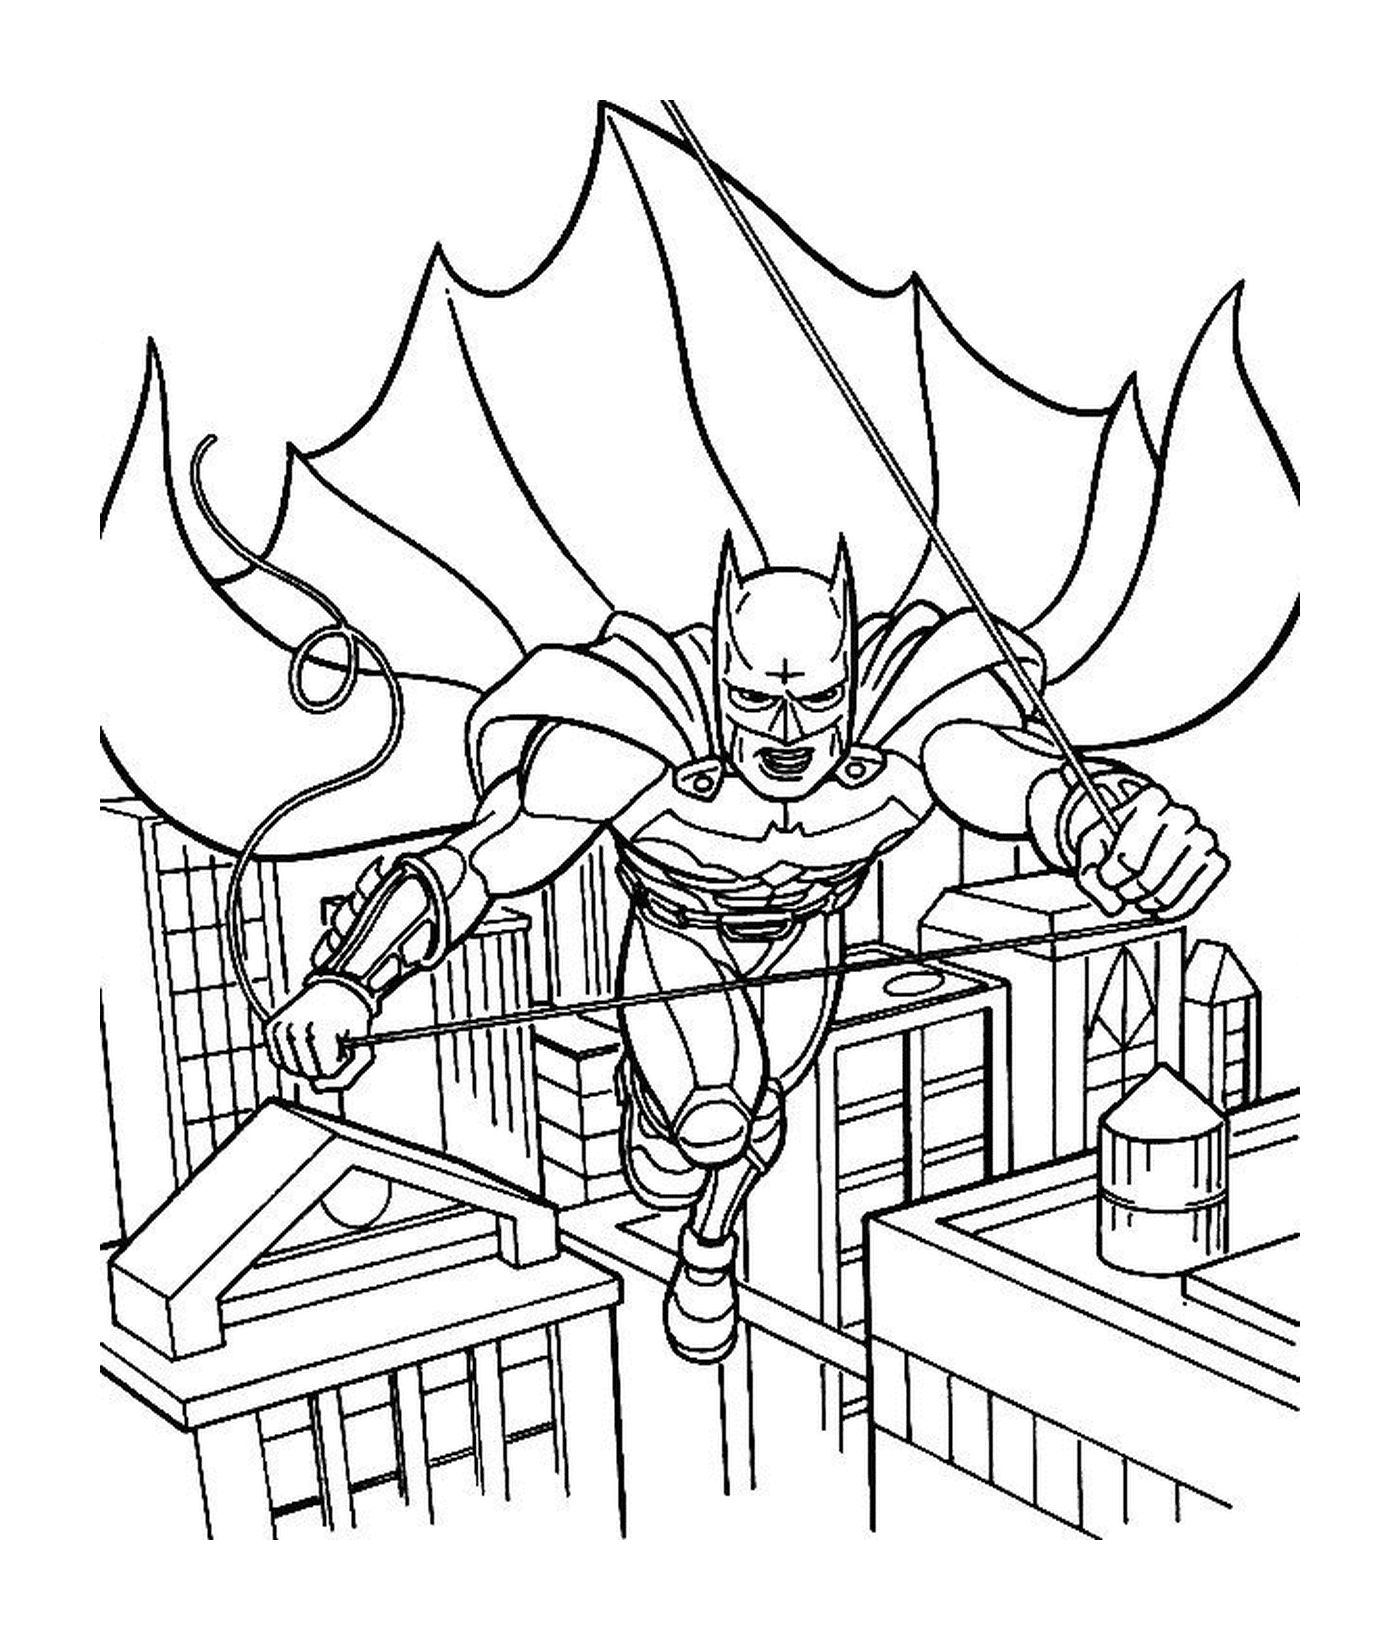  Batman volando en el aire 